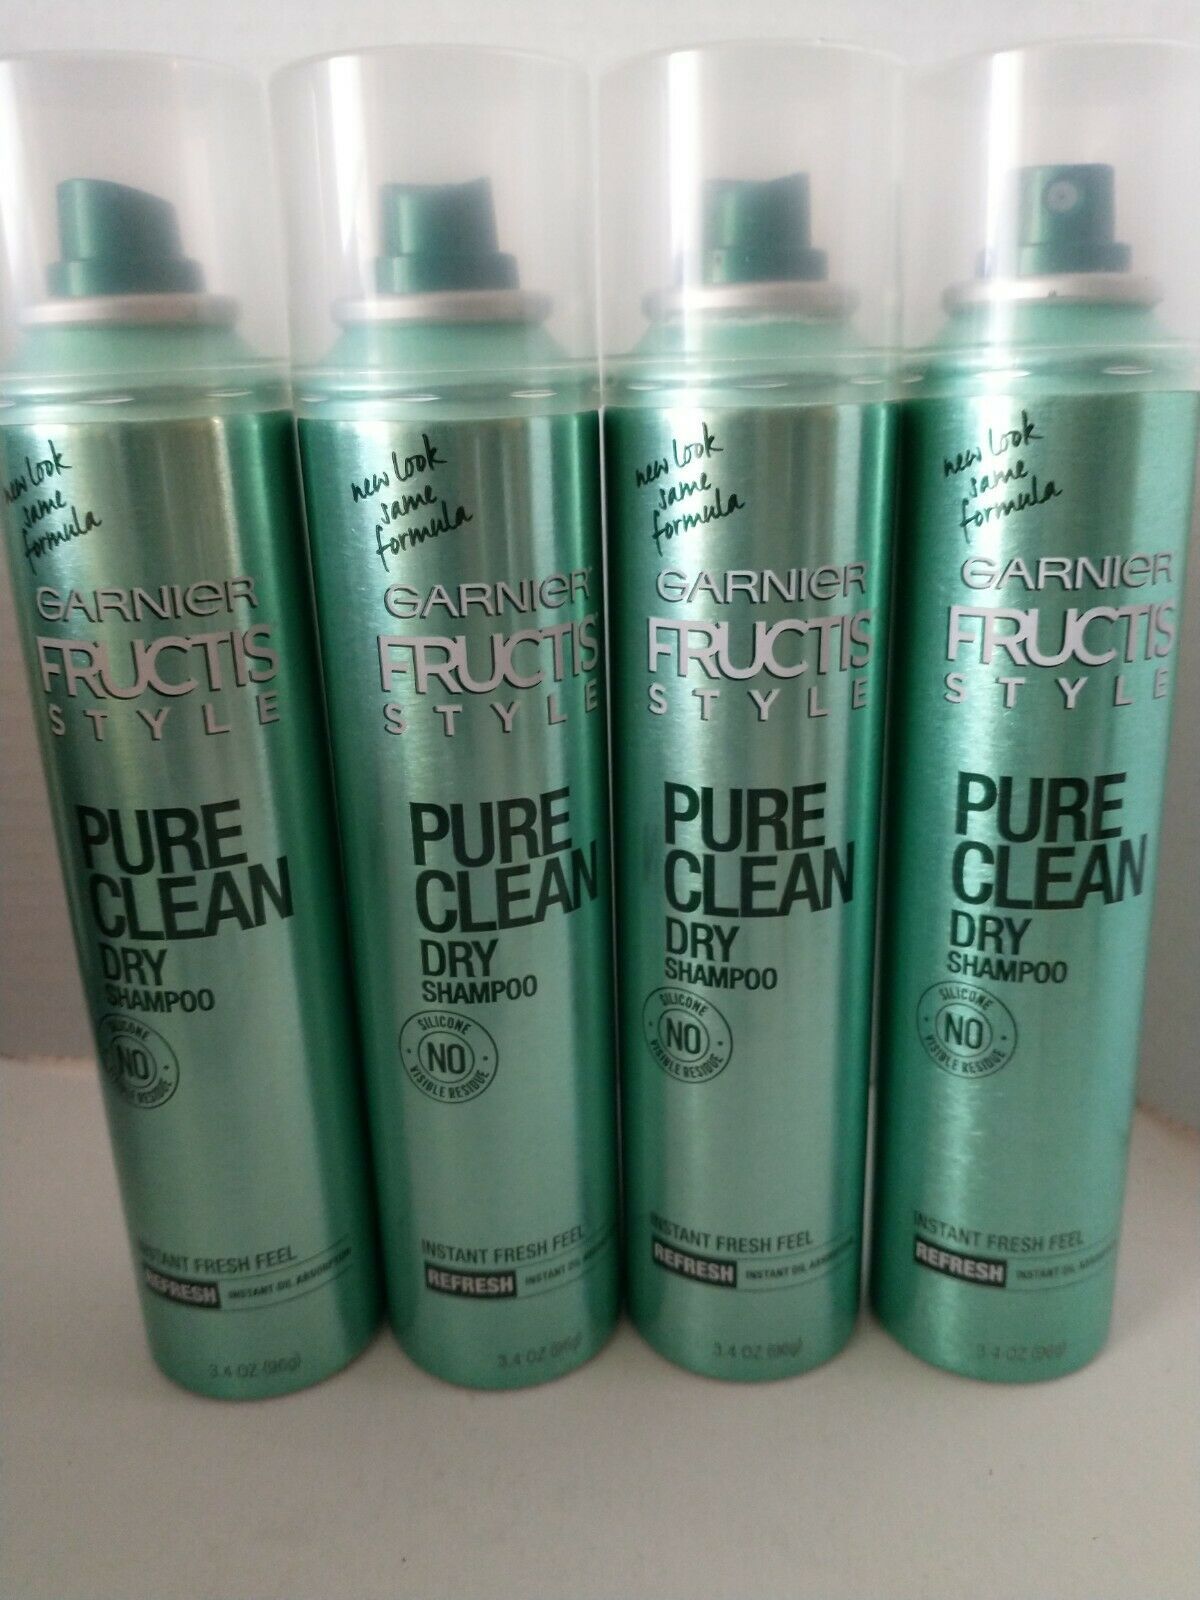 4 Garnier Fructis Style Pure Clean Dry Shampoo Pure Clean 3.4 oz Each - $19.95